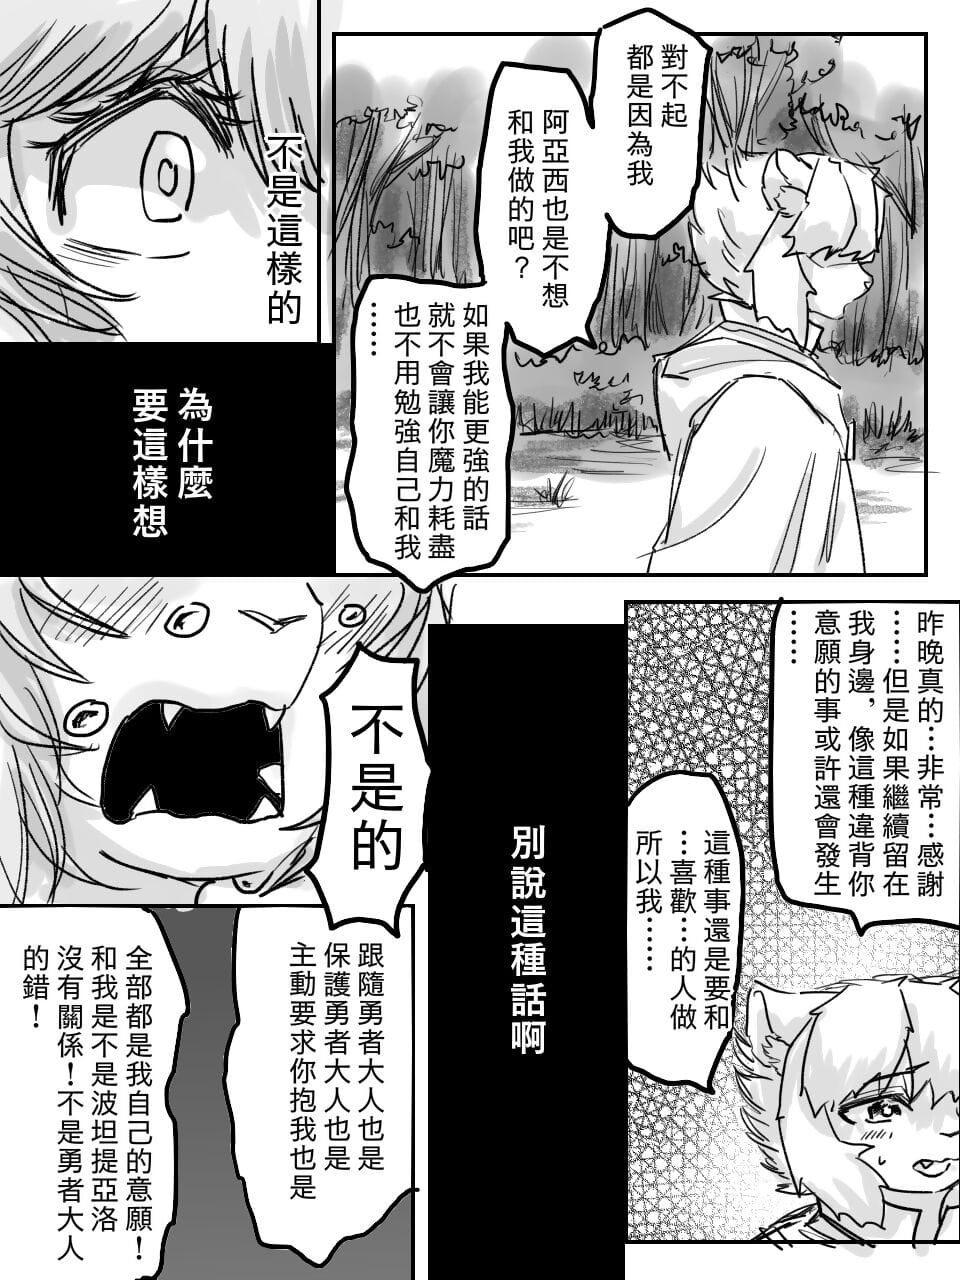 （teammate）勇者和法师露营的小故事 by:鬼流 부품 3 page 1